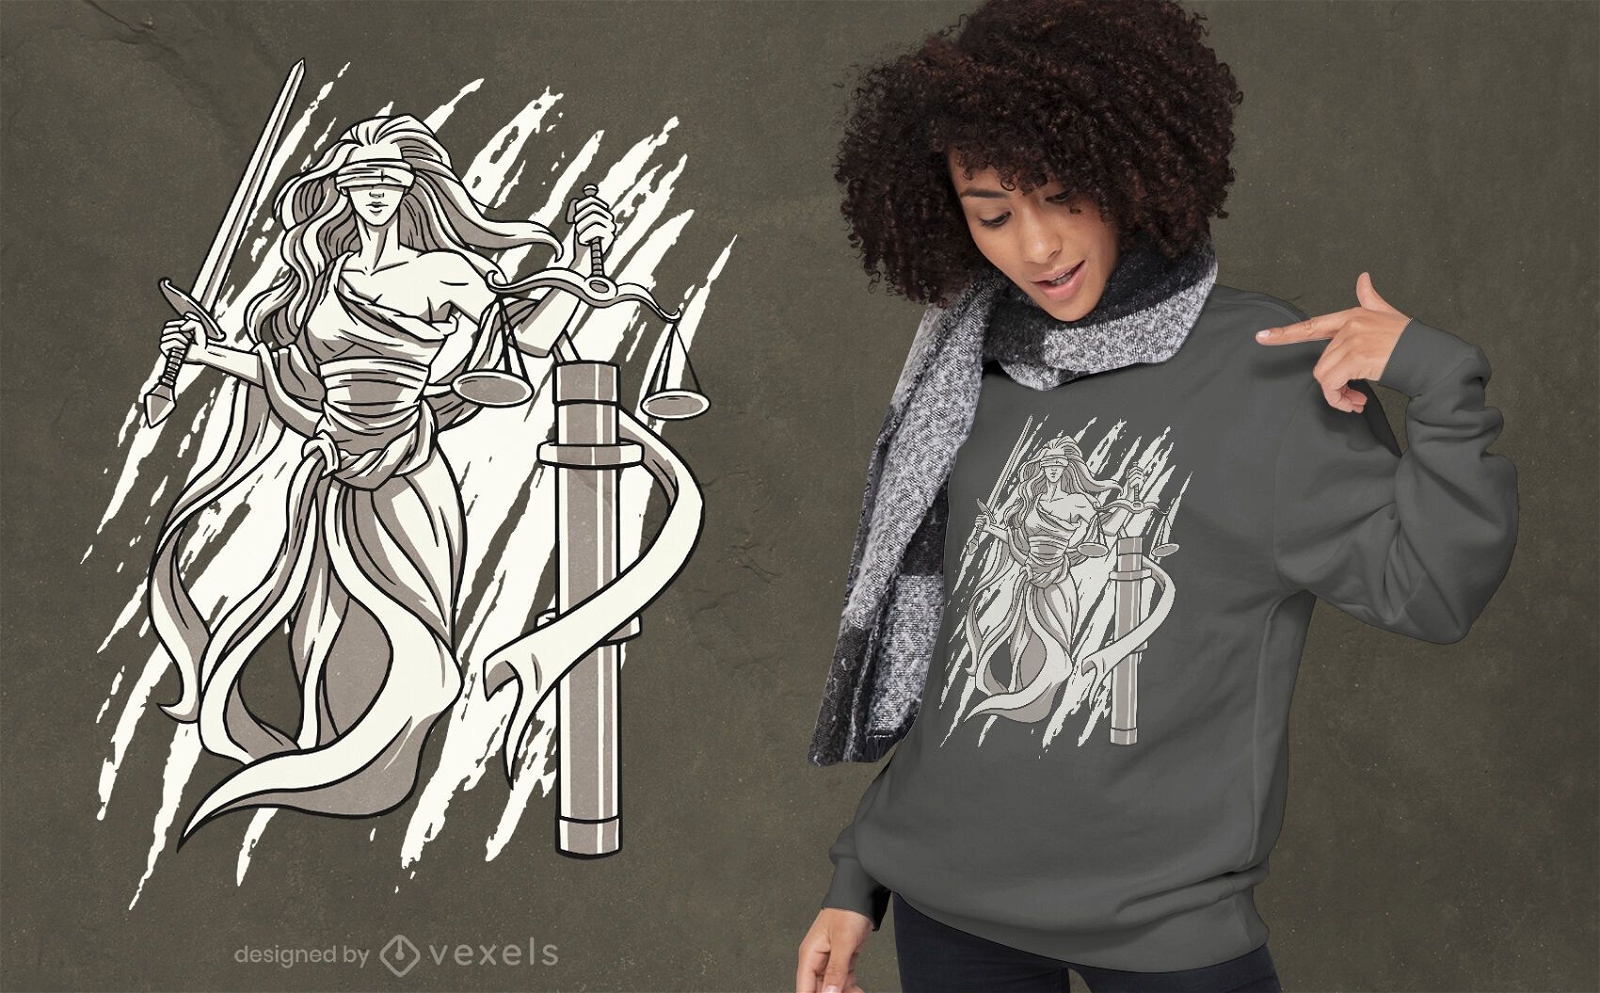 Schwarzweiss-T-Shirt-Design von Lady Justice